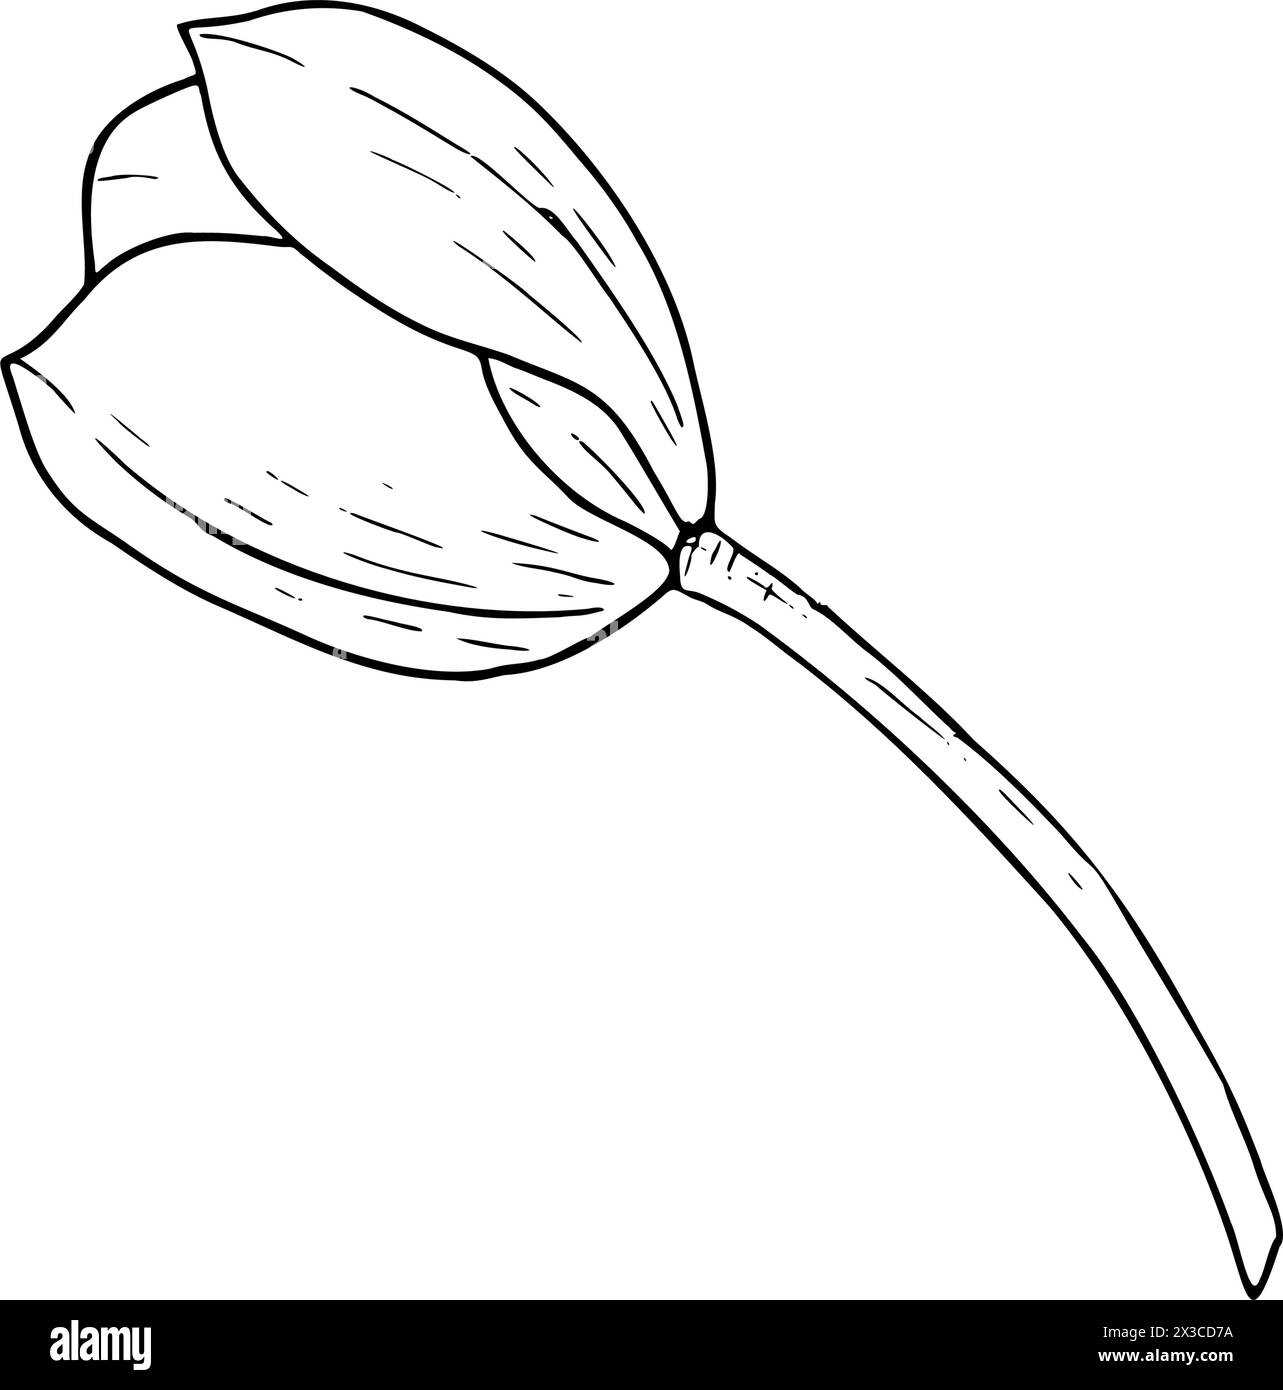 Tulpenblume Vektor-Illustration. Schwarze Umrisszeichnung des Glühlampenkopfes. Grußkarte mit botanischer Blüte. Kontur der Tintenlinie Silhouette Kontur Stock Vektor